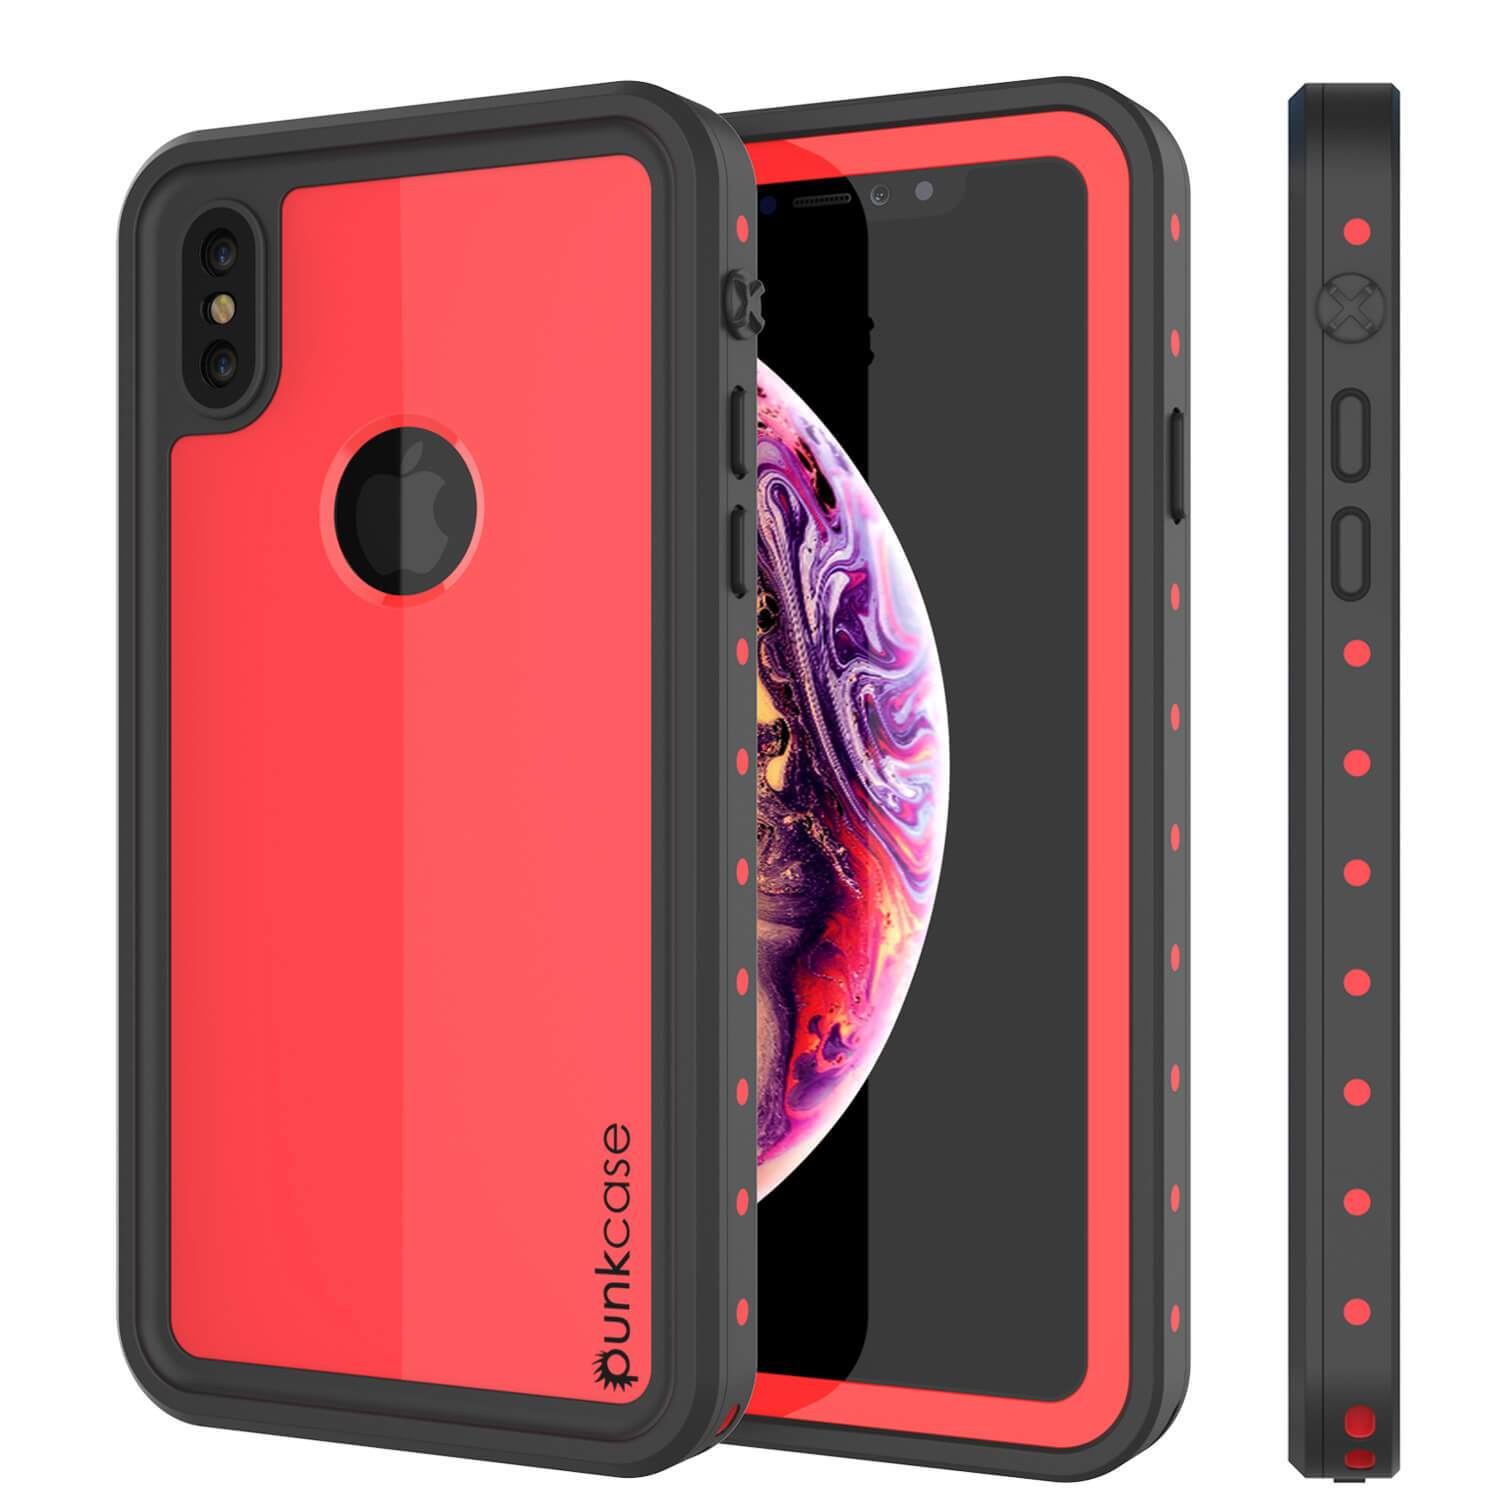 iPhone XS Waterproof IP68 Case, Punkcase [Red] [StudStar Series] [Slim Fit] [Dirtproof]